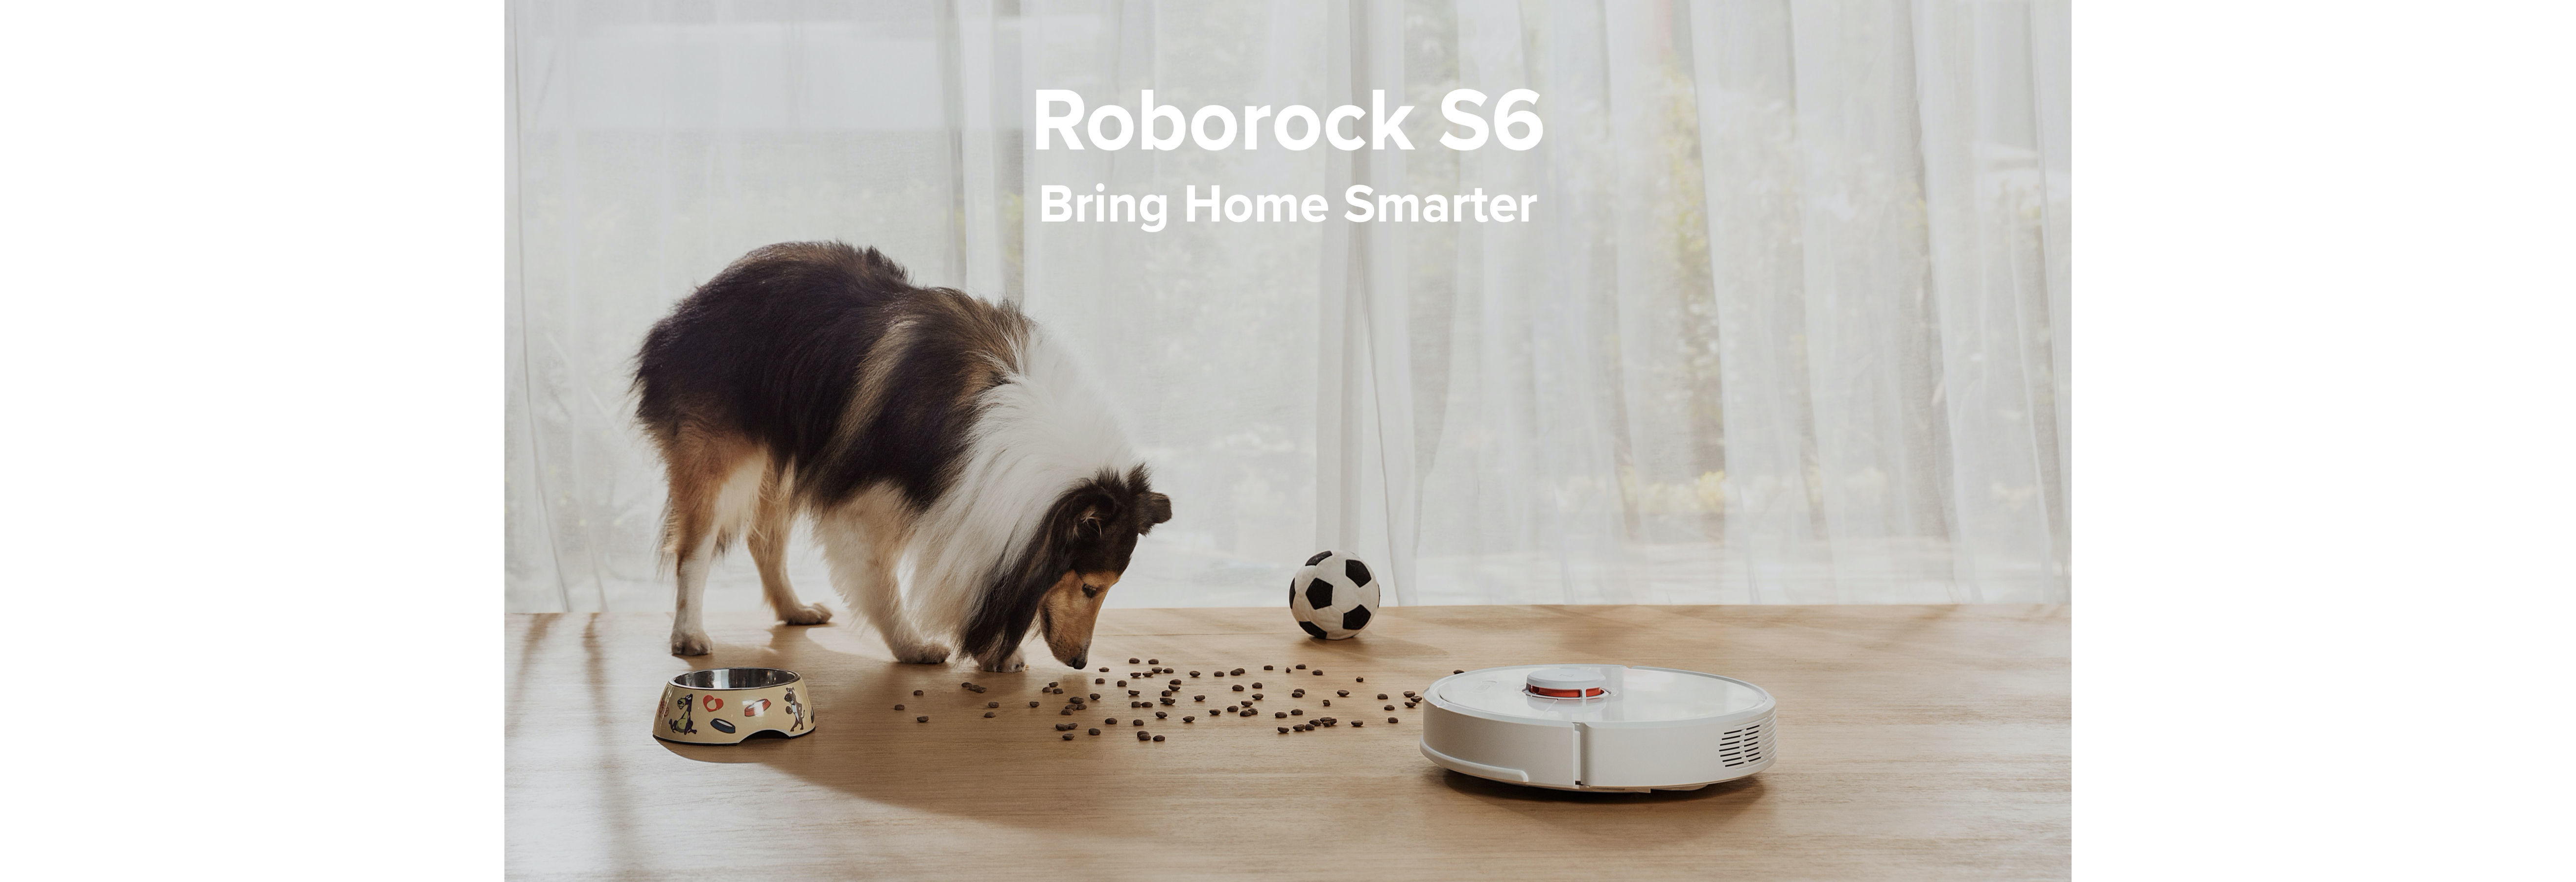 หุ่นยนต์ดูดฝุ่น ถูพื้น อัจฉริยะ โรโบร็อค Roborock S6 - Smart Robotic Vacuum and Mop Cleaner - Bring 